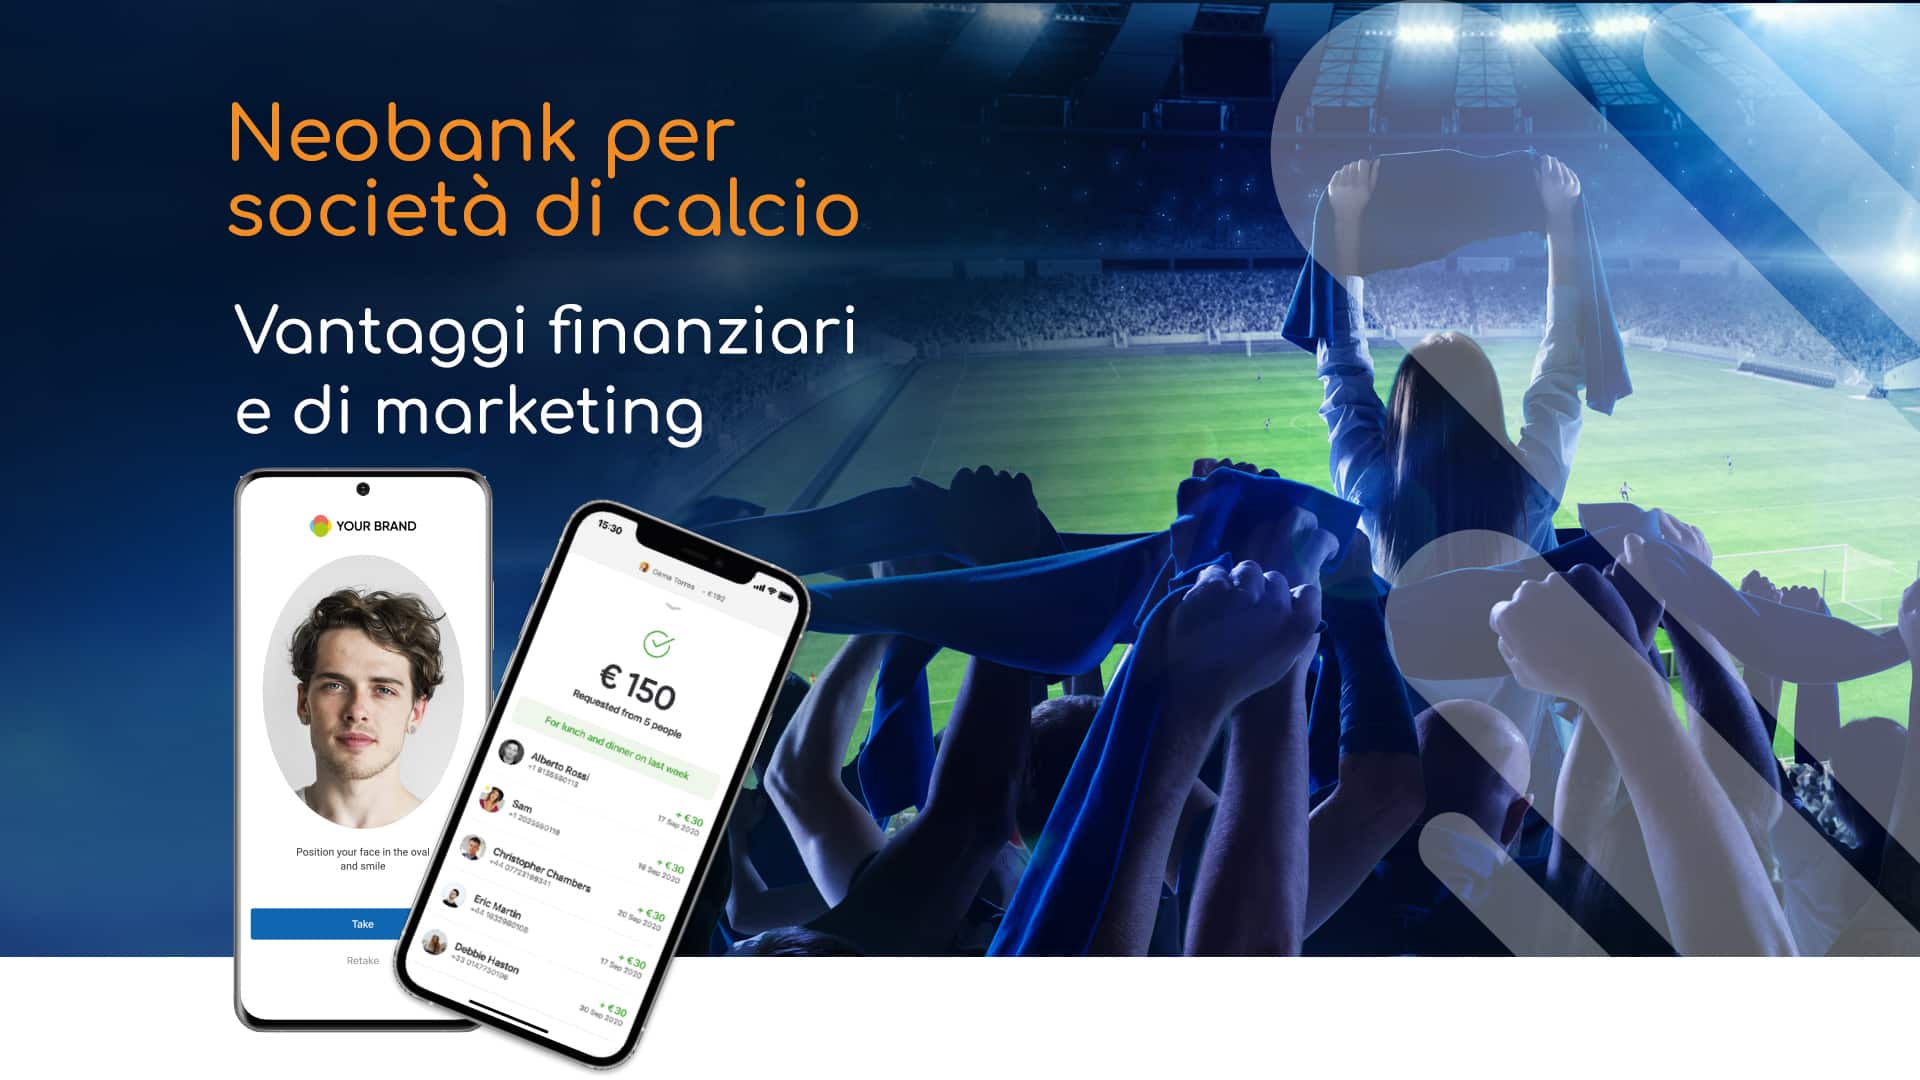 Neobank per società di calcio - Smart Bank 800